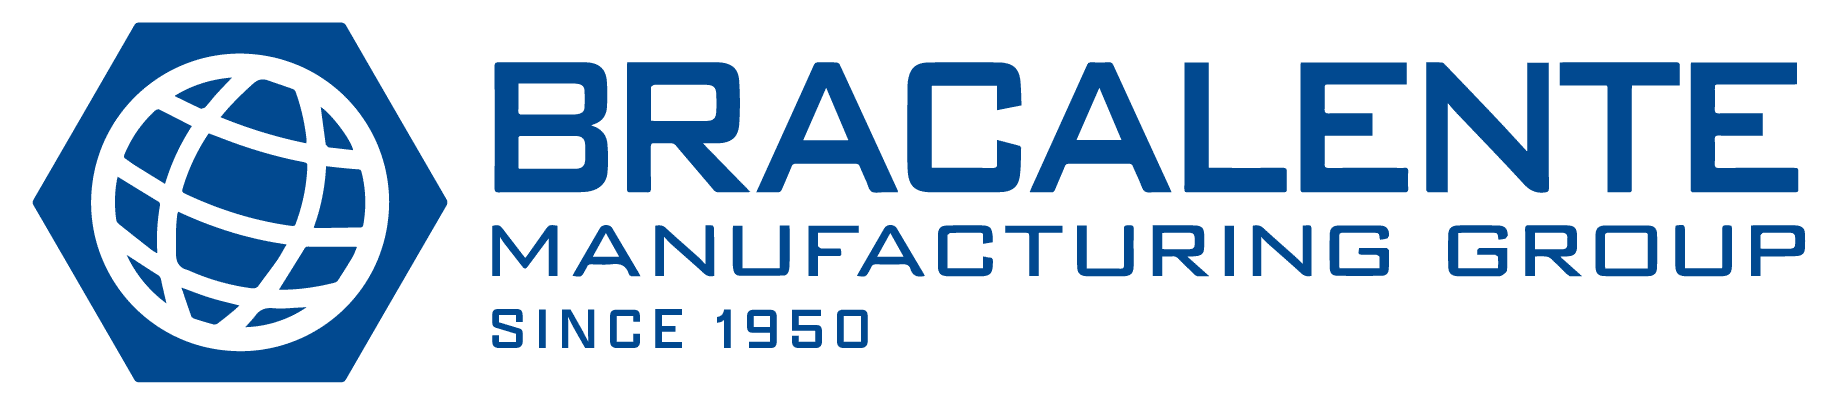 Производственная группа Bracalente с 1950 года.